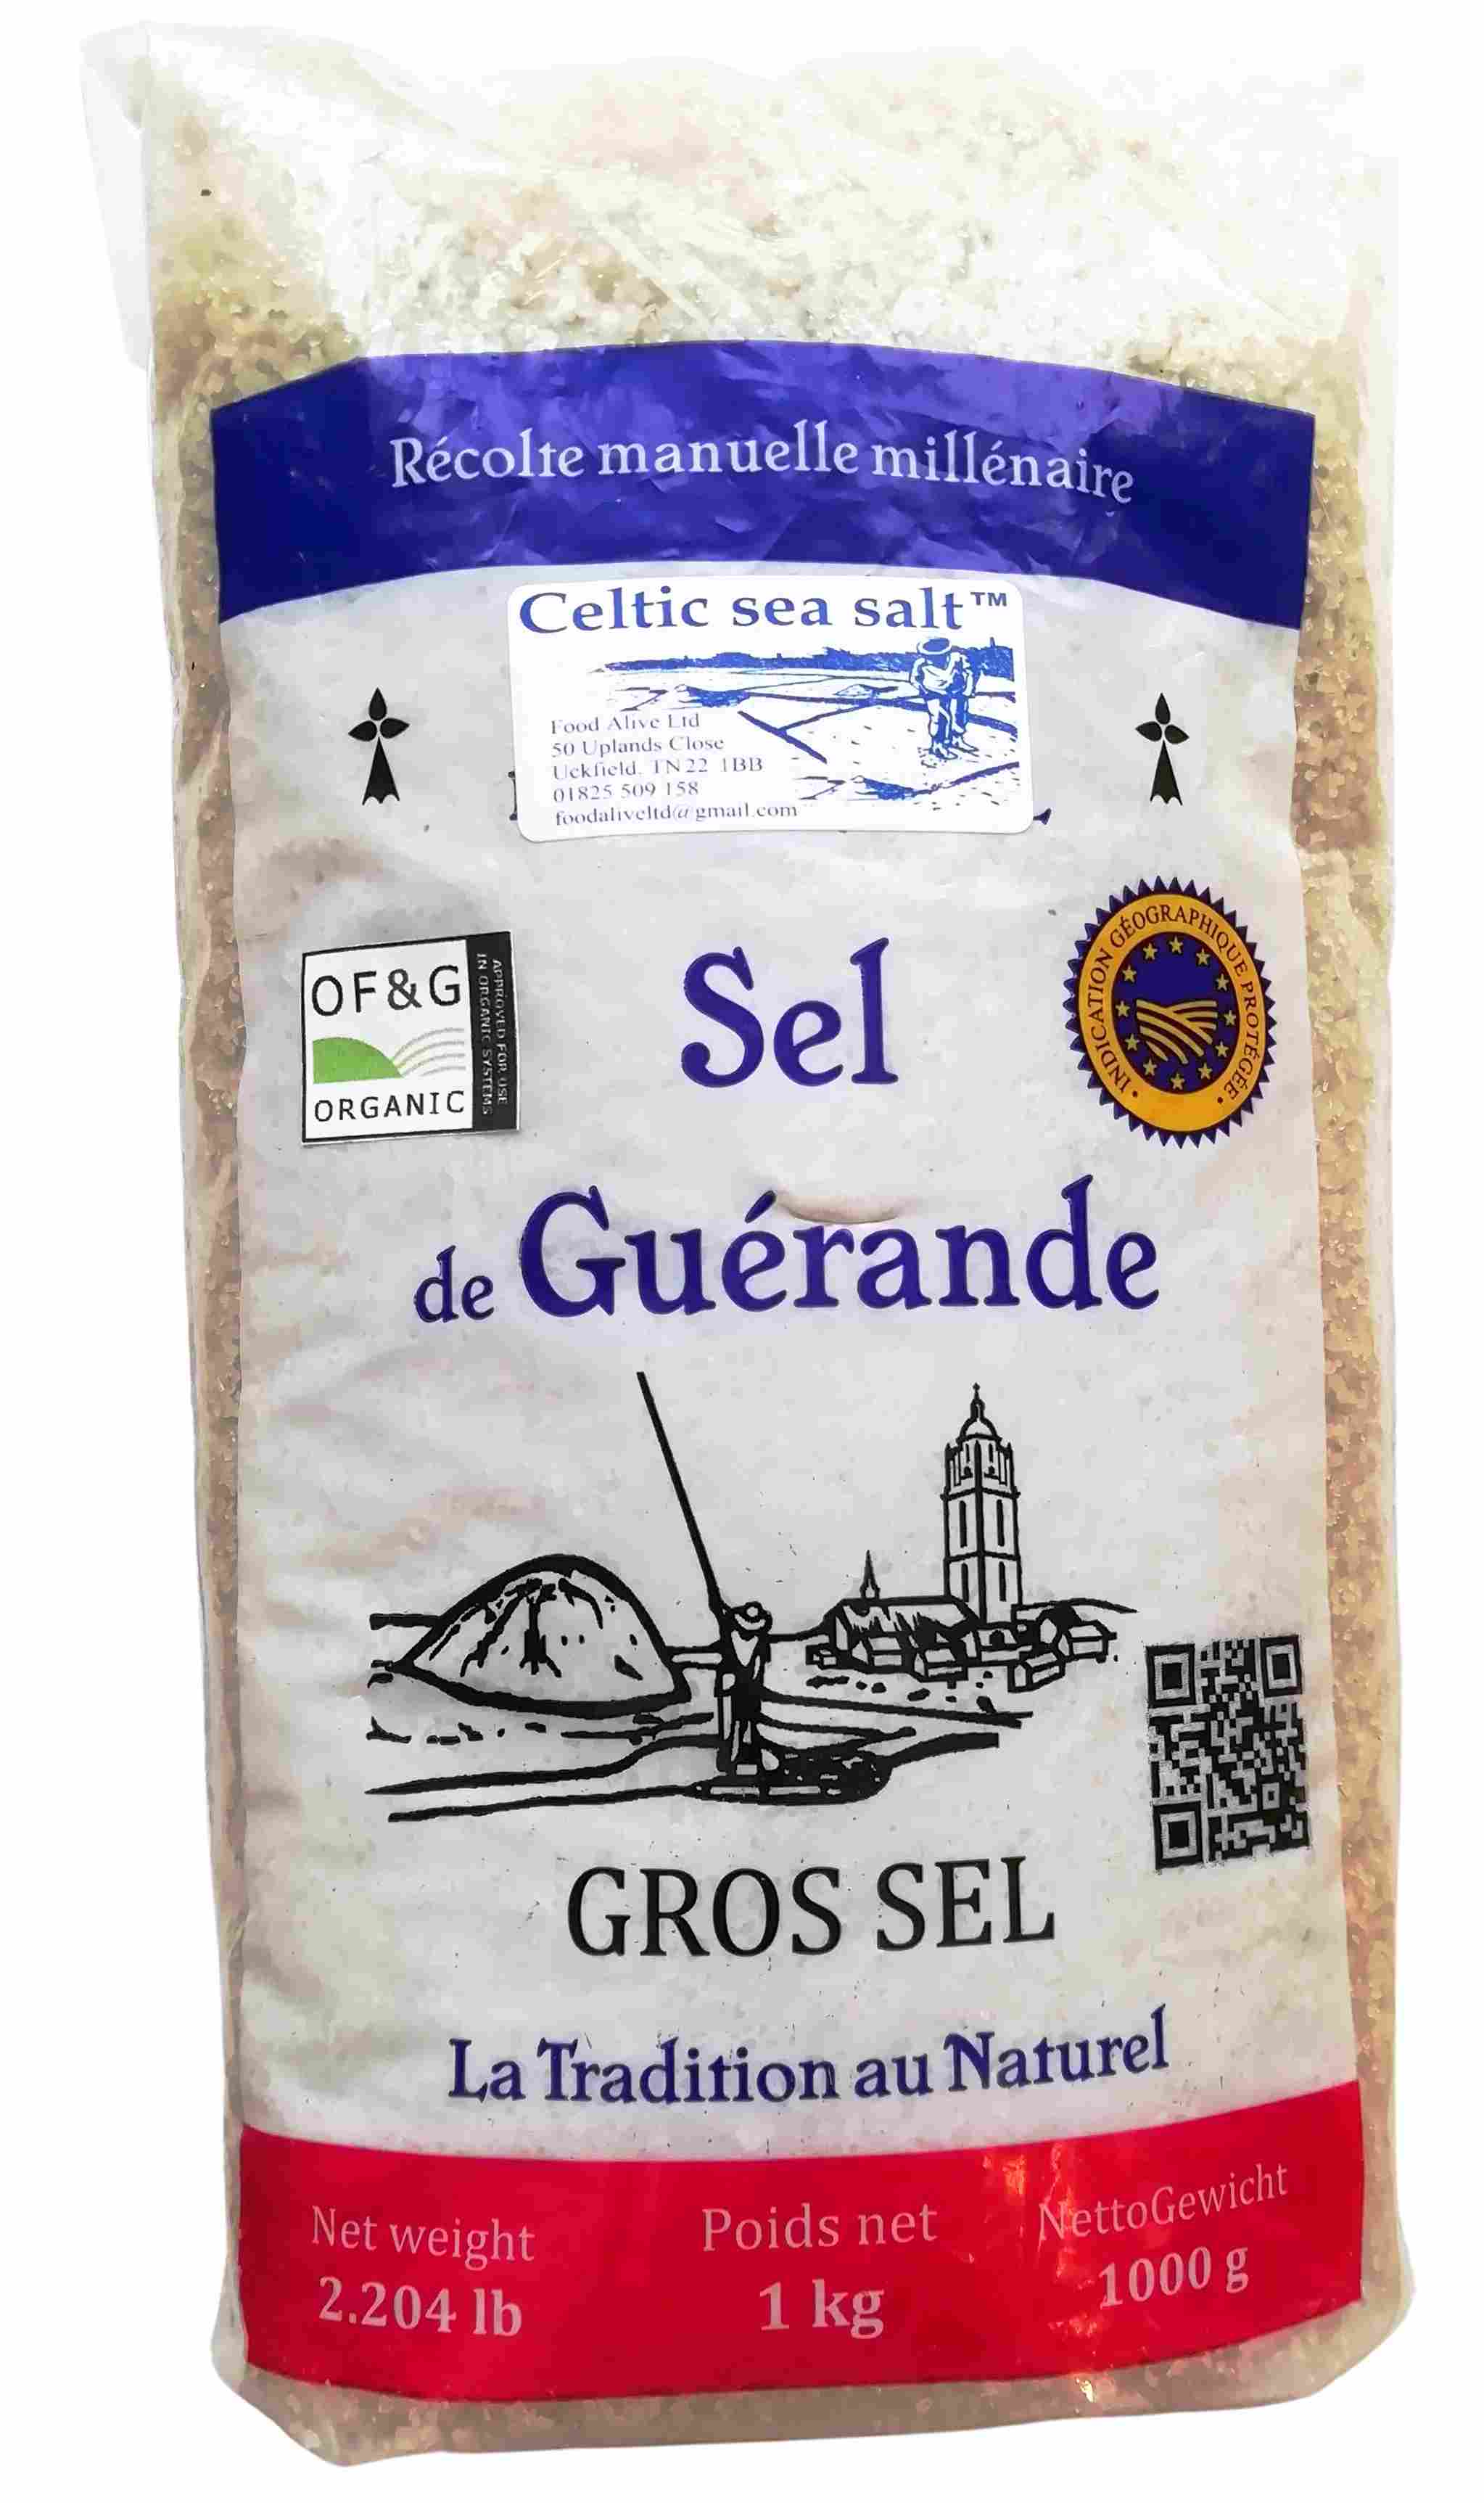 What Is Celtic Sea Salt?